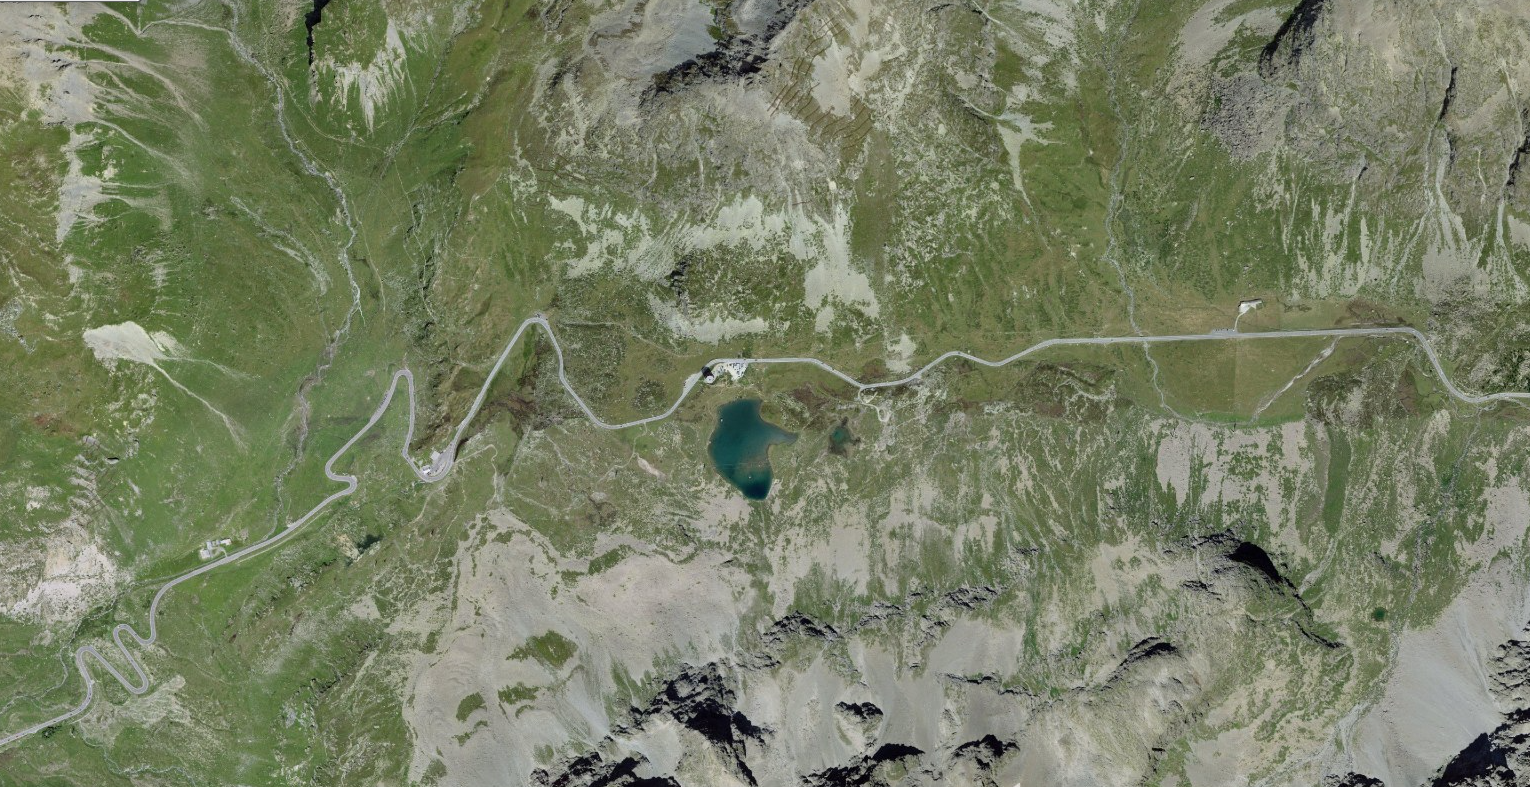 L'immagine mostra una vista aerea del Passo dello Julier (GR) e dei suoi dintorni.